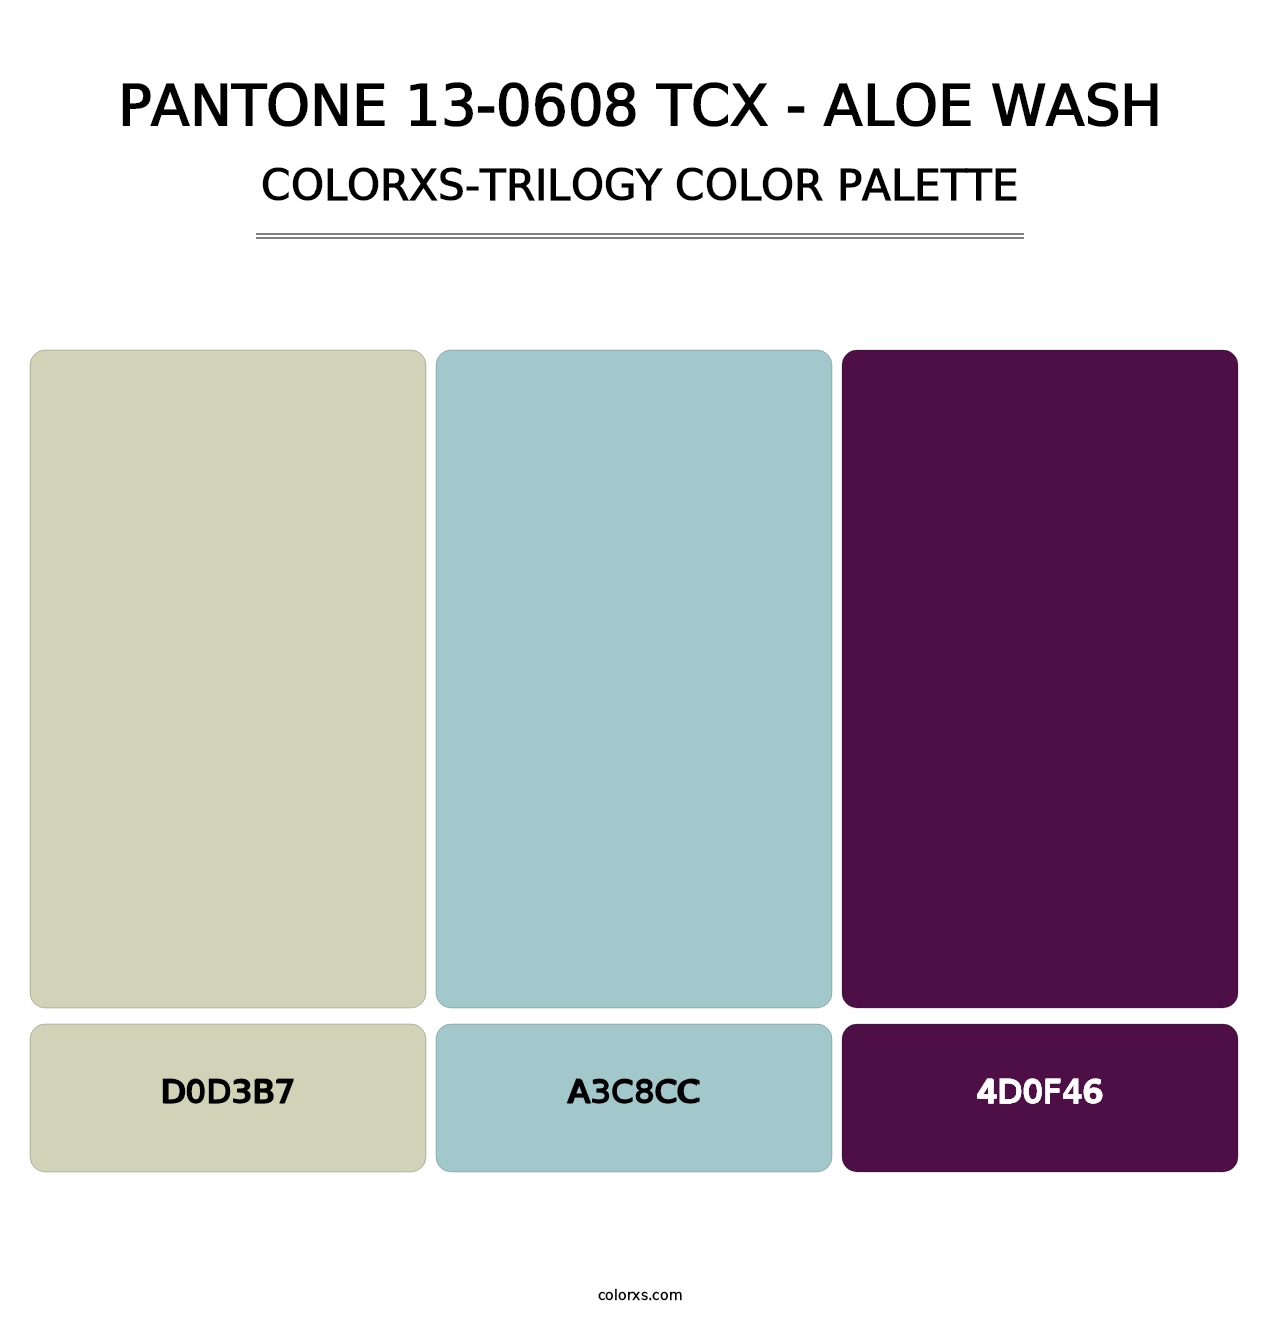 PANTONE 13-0608 TCX - Aloe Wash - Colorxs Trilogy Palette